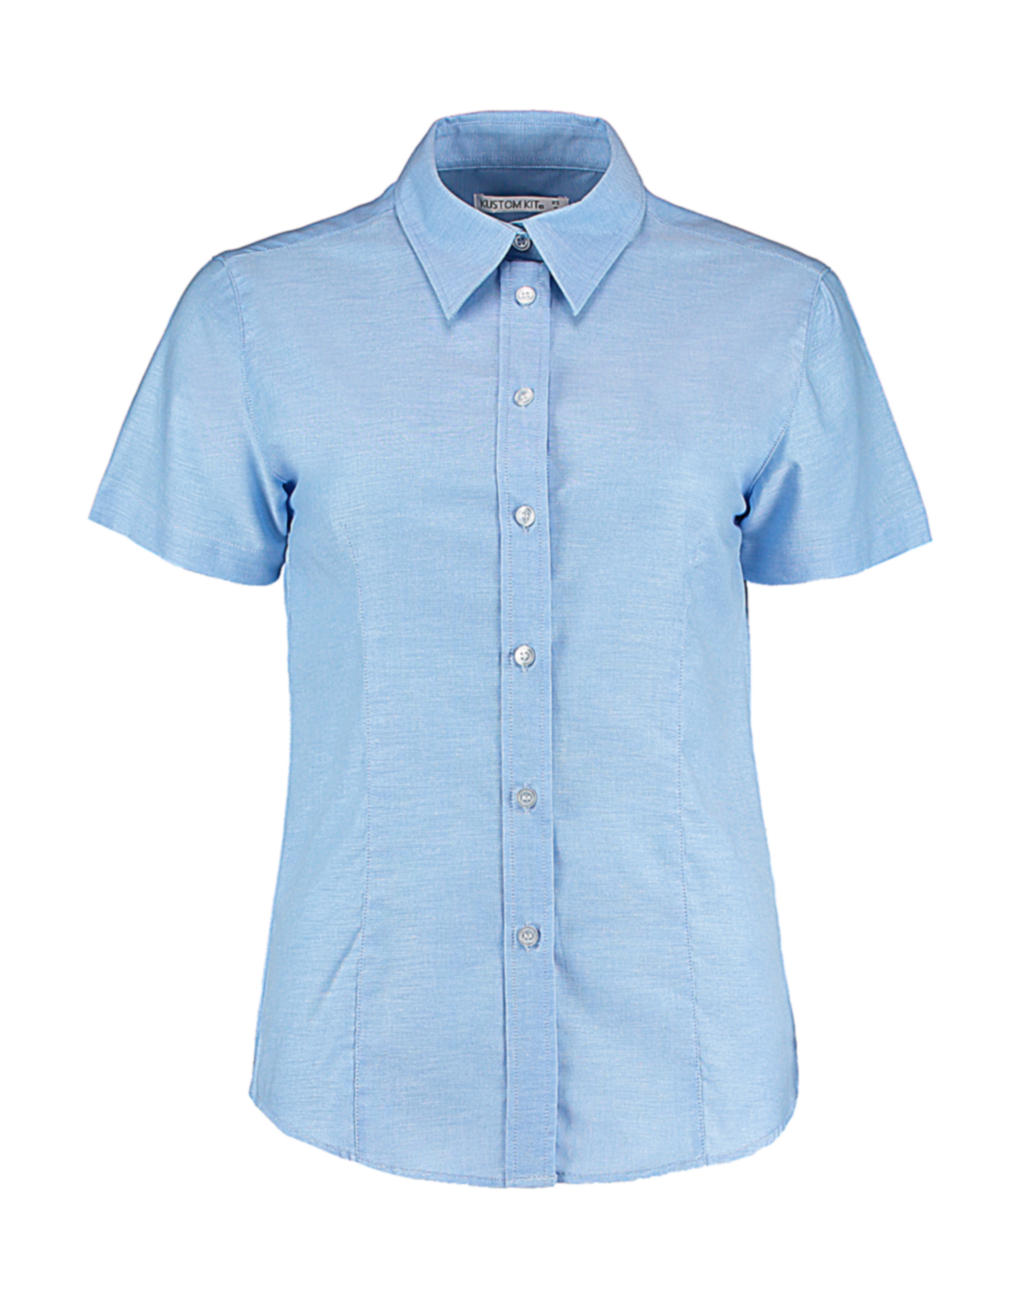 Blúzka Workwear Oxford - light blue